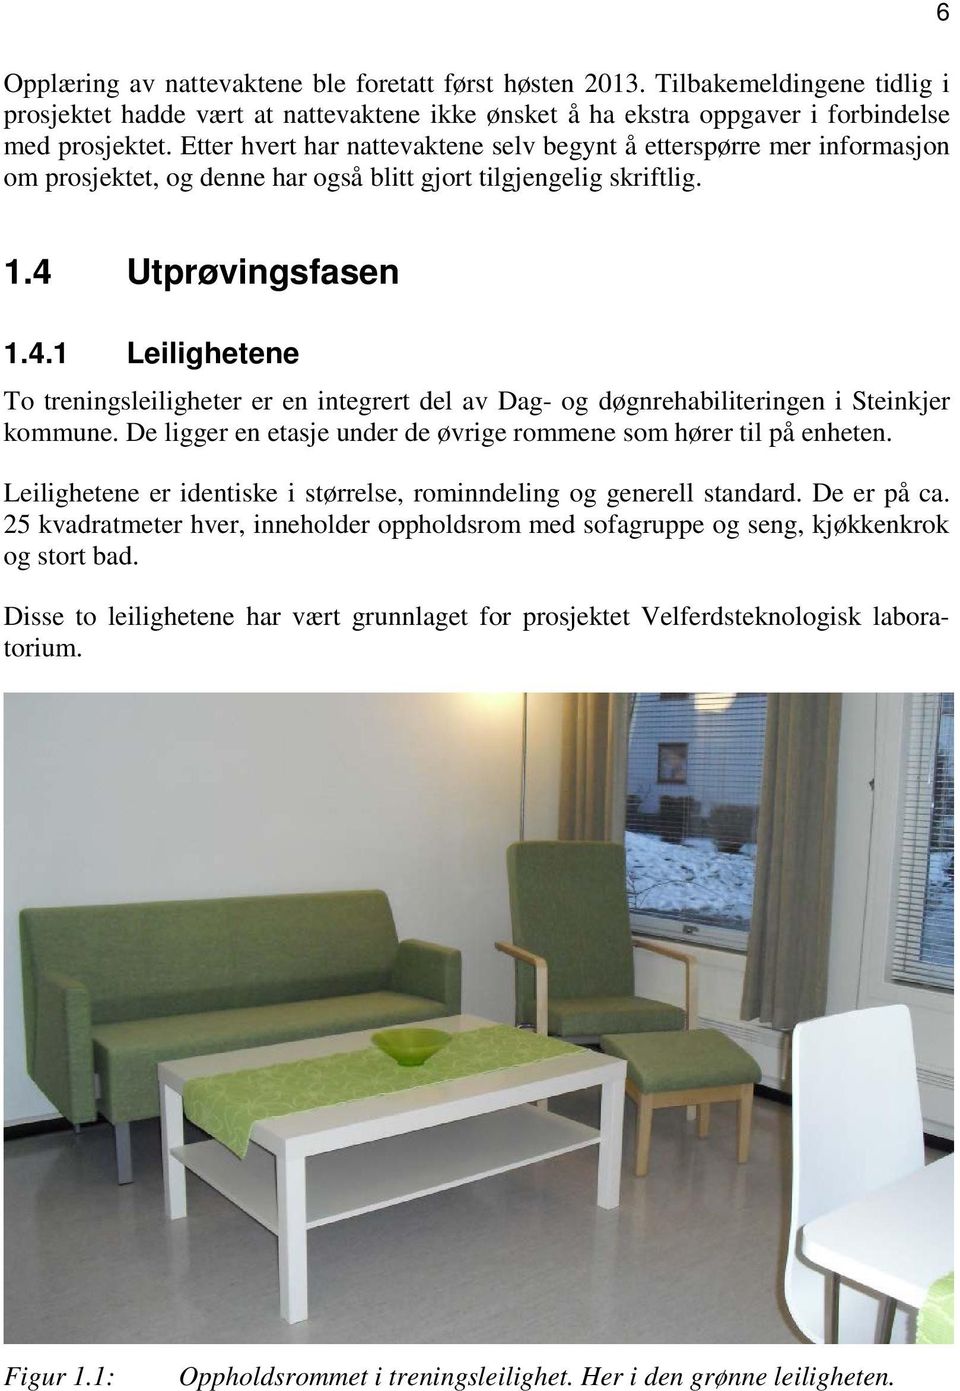 Utprøvingsfasen 1.4.1 Leilighetene To treningsleiligheter er en integrert del av Dag- og døgnrehabiliteringen i Steinkjer kommune. De ligger en etasje under de øvrige rommene som hører til på enheten.